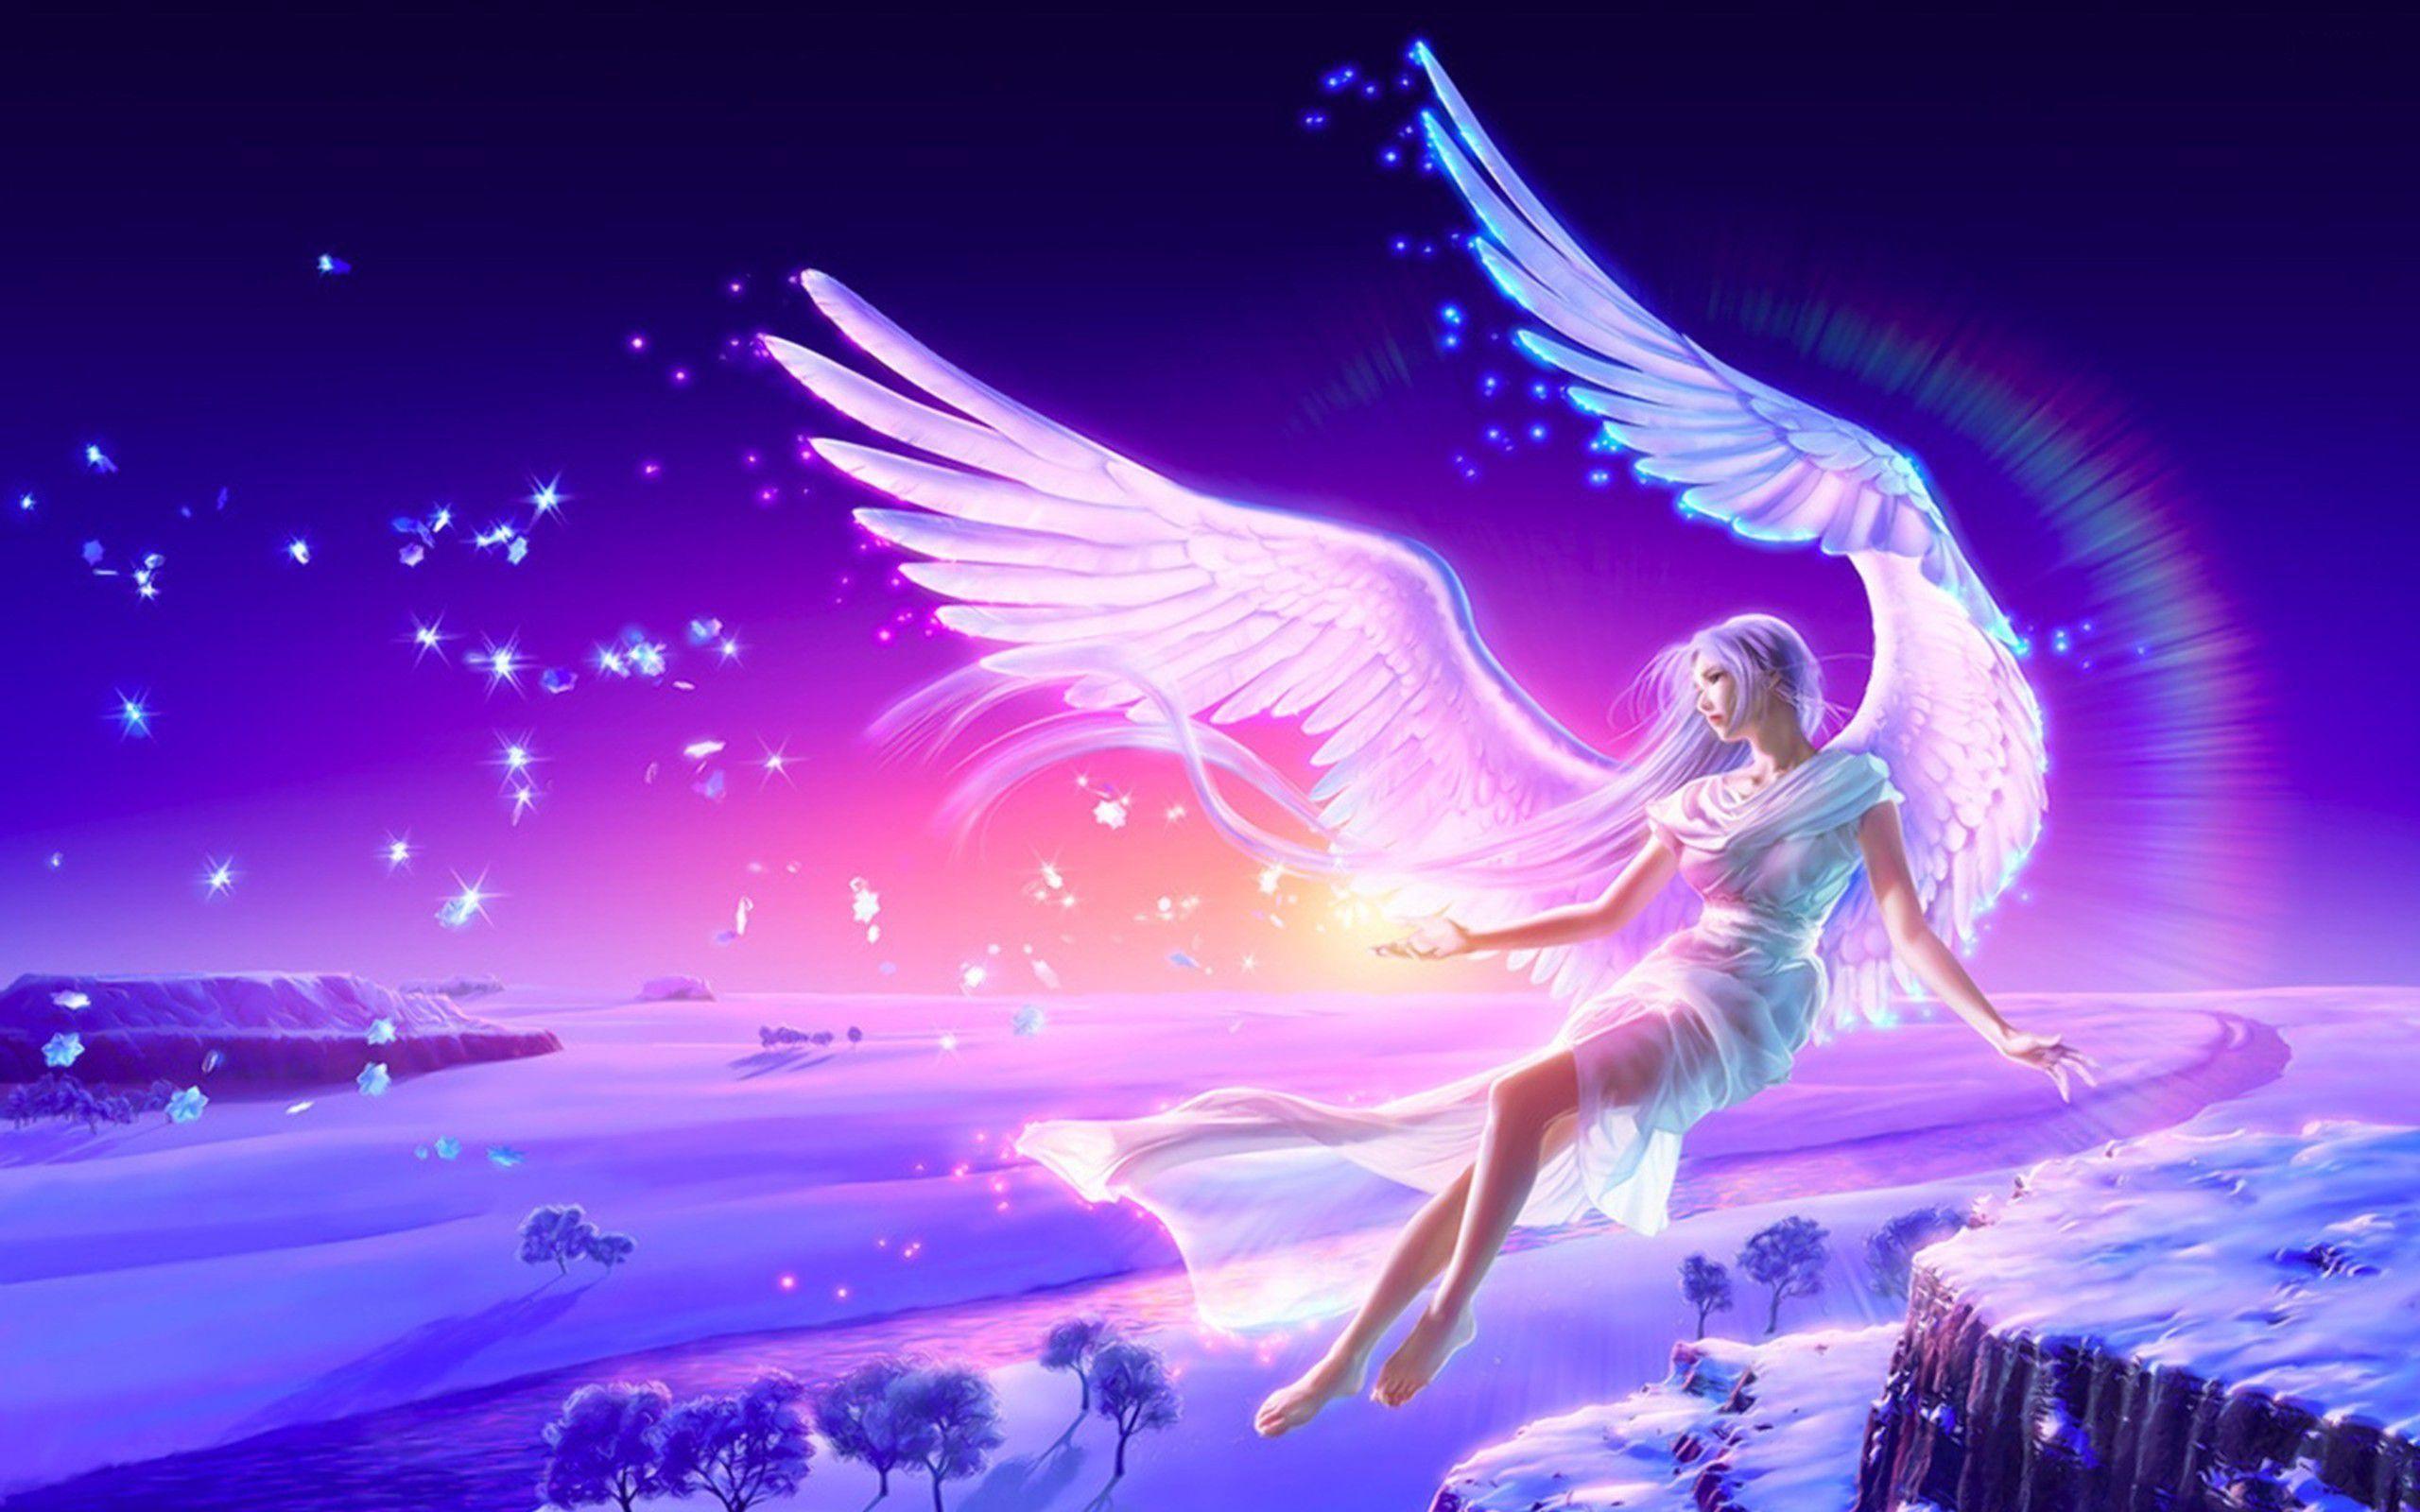 Anime Angels Wallpaper. New Anime Angel Full HD Wallpaper